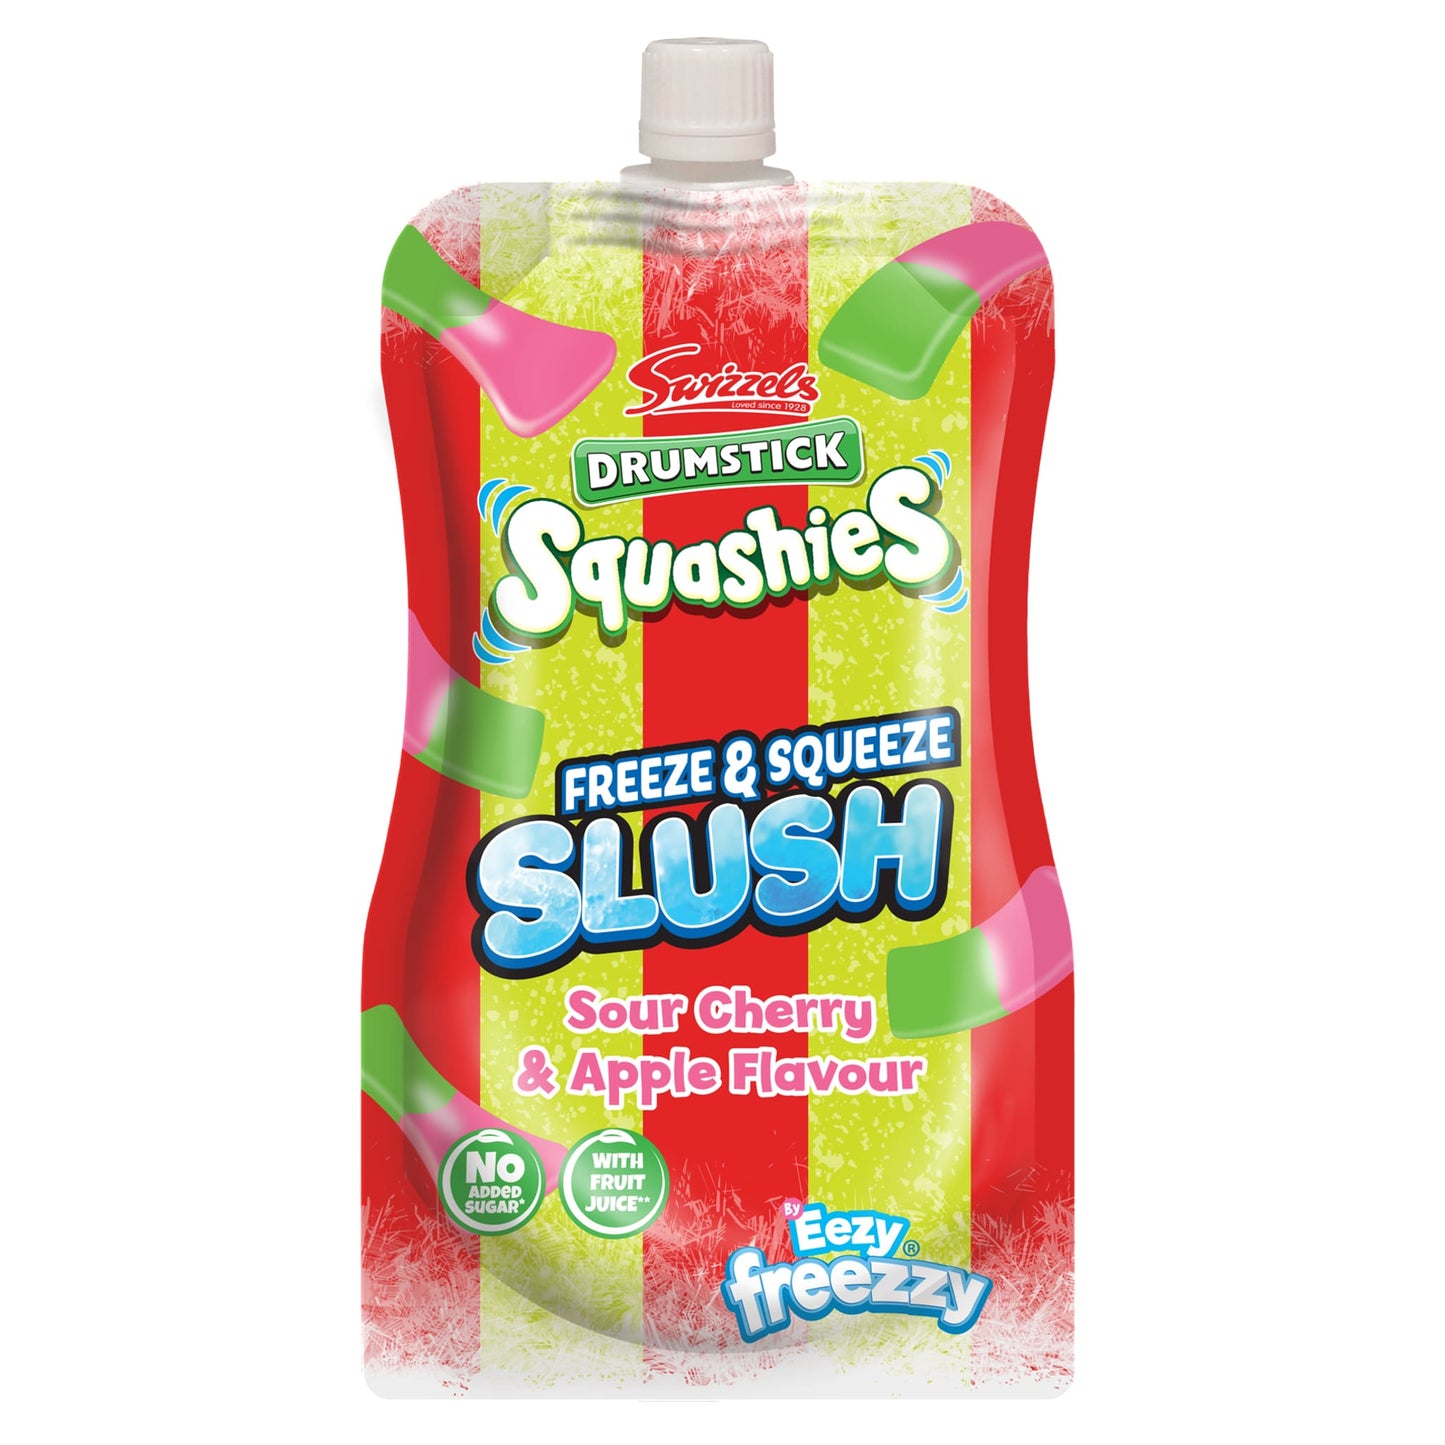 Swizzels Drumstick Squashies Sour Cherry & Apple Flavour Slush | 250ml